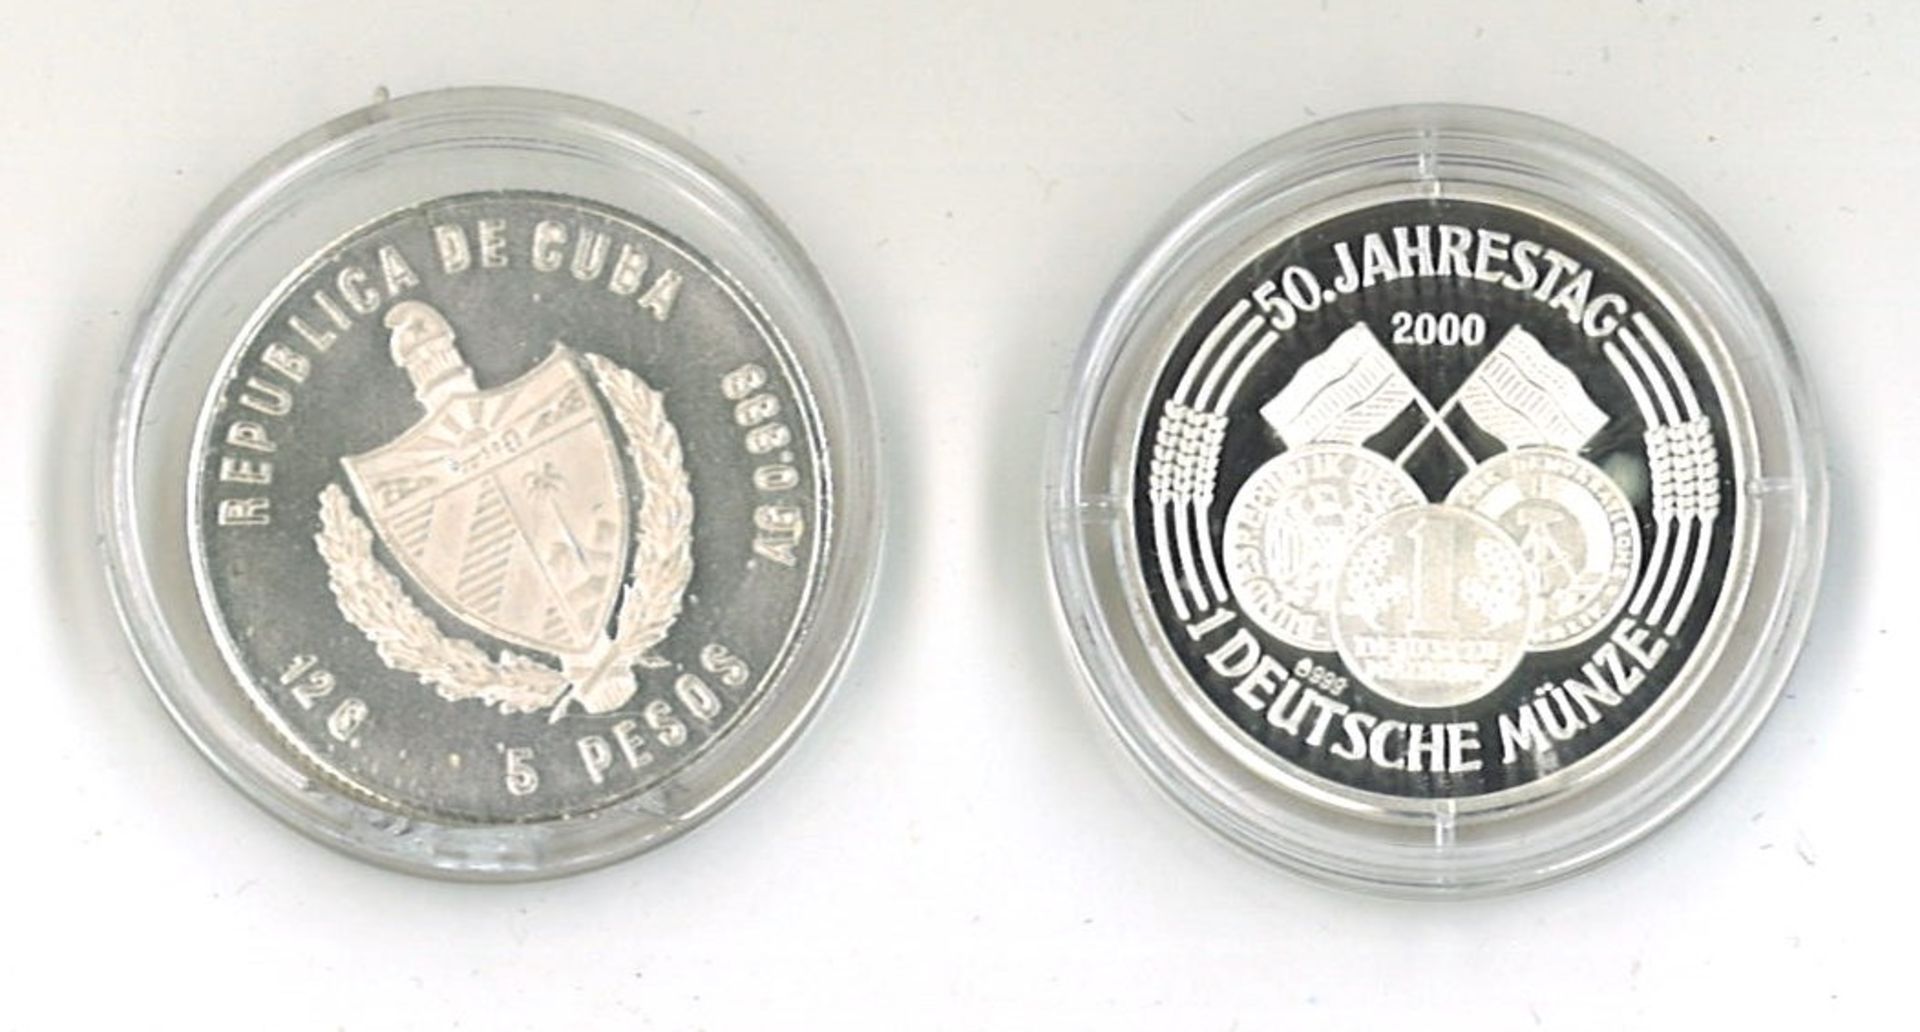 2x Silbermünze, dabei 5 Pesos Cuba sowie 1x Deutsche Münze 50. Jahrestag 2000